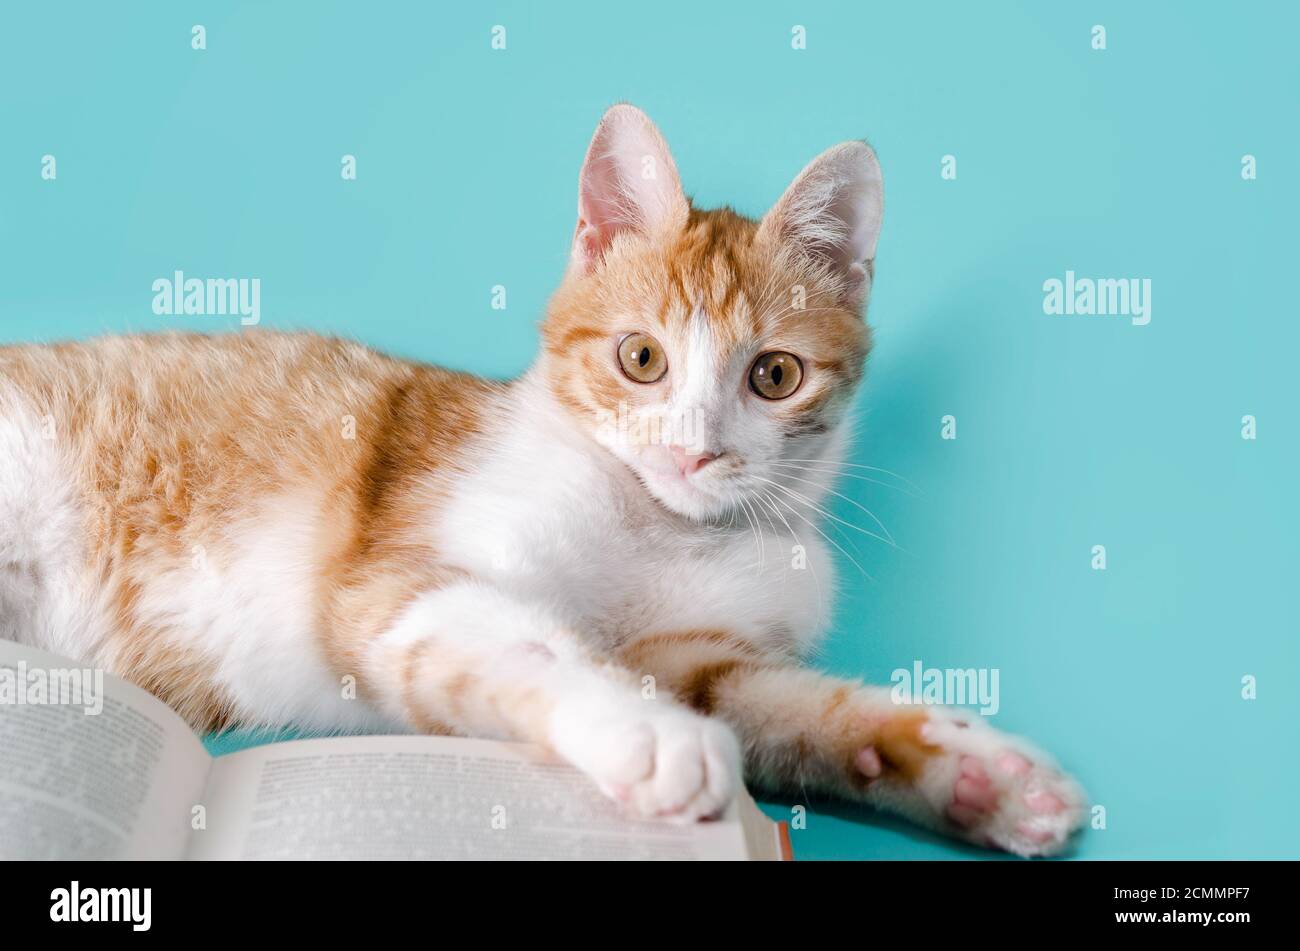 ginger gatto e libro su uno sfondo chiaro studio girato Foto Stock